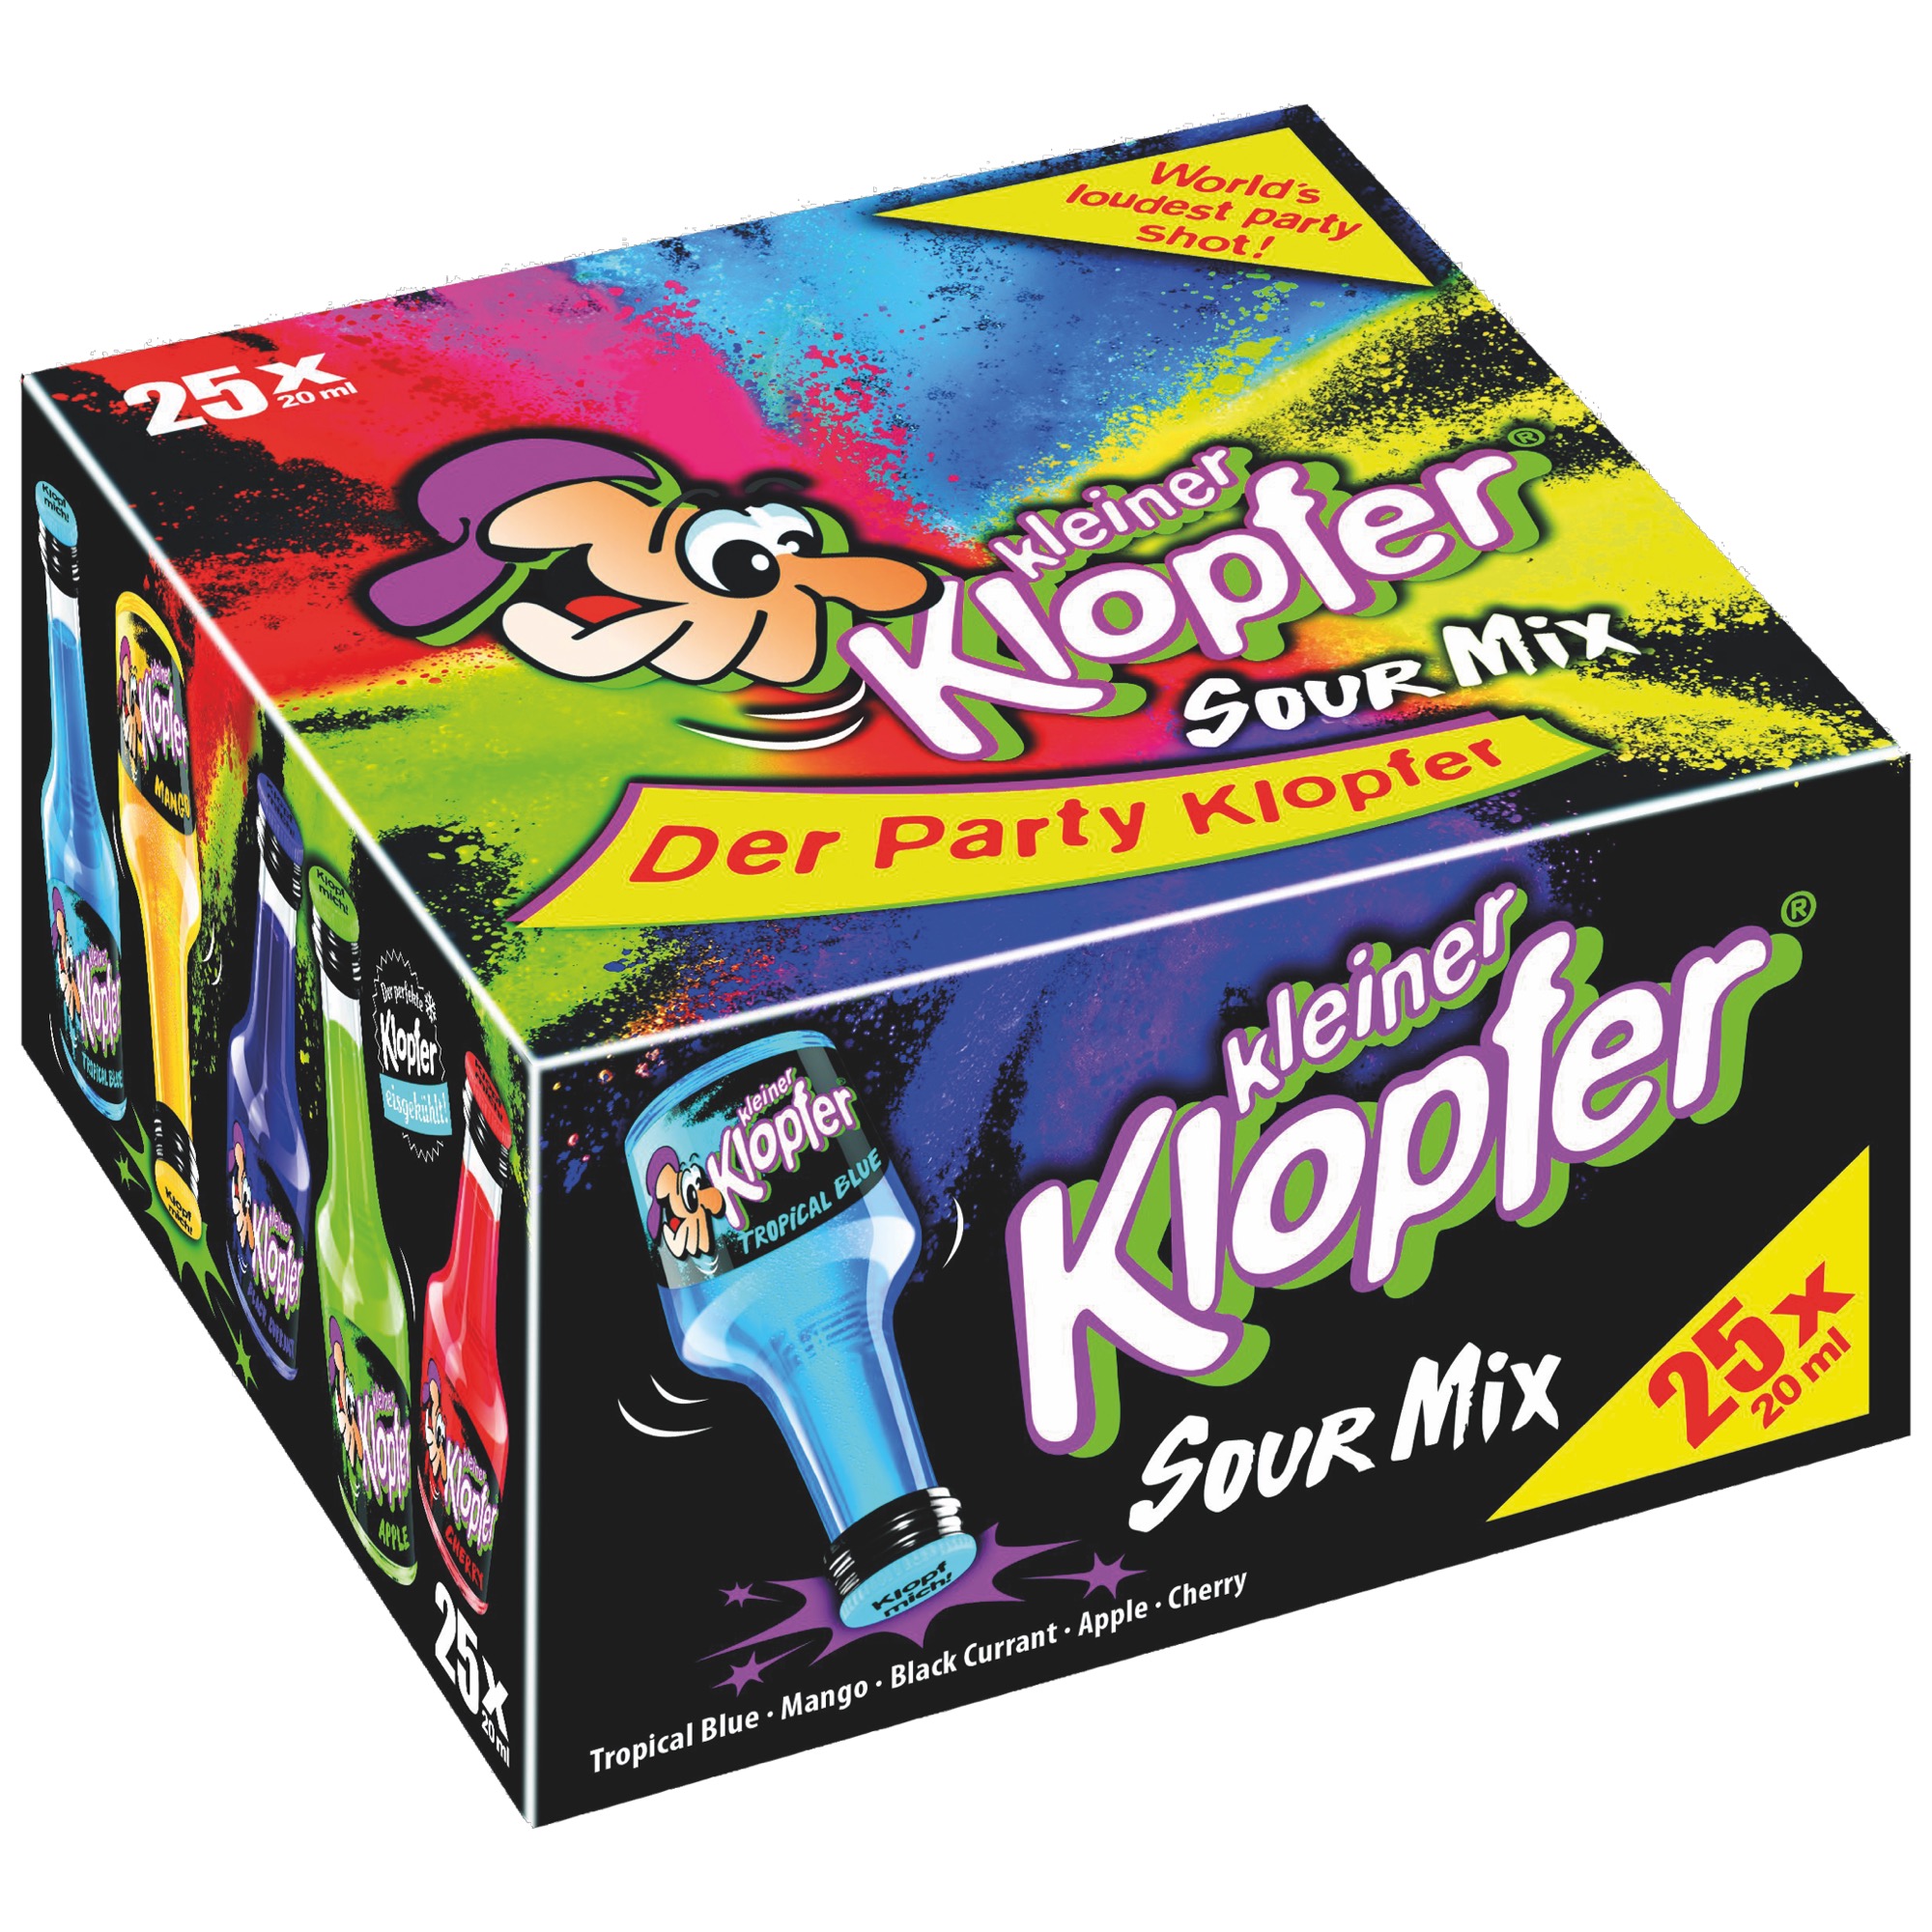 Klopfer 25x0,02l, Sour Mix